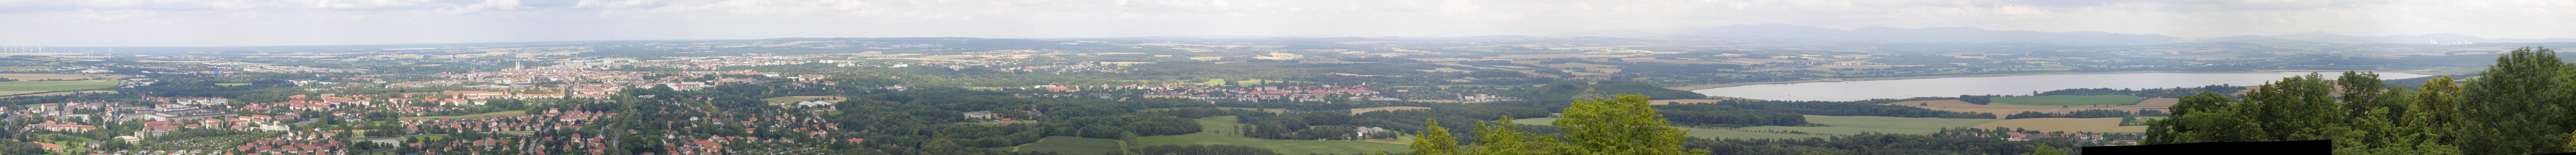 Panorama Göerlitz von der Landeskrone in nördlicher Richtung